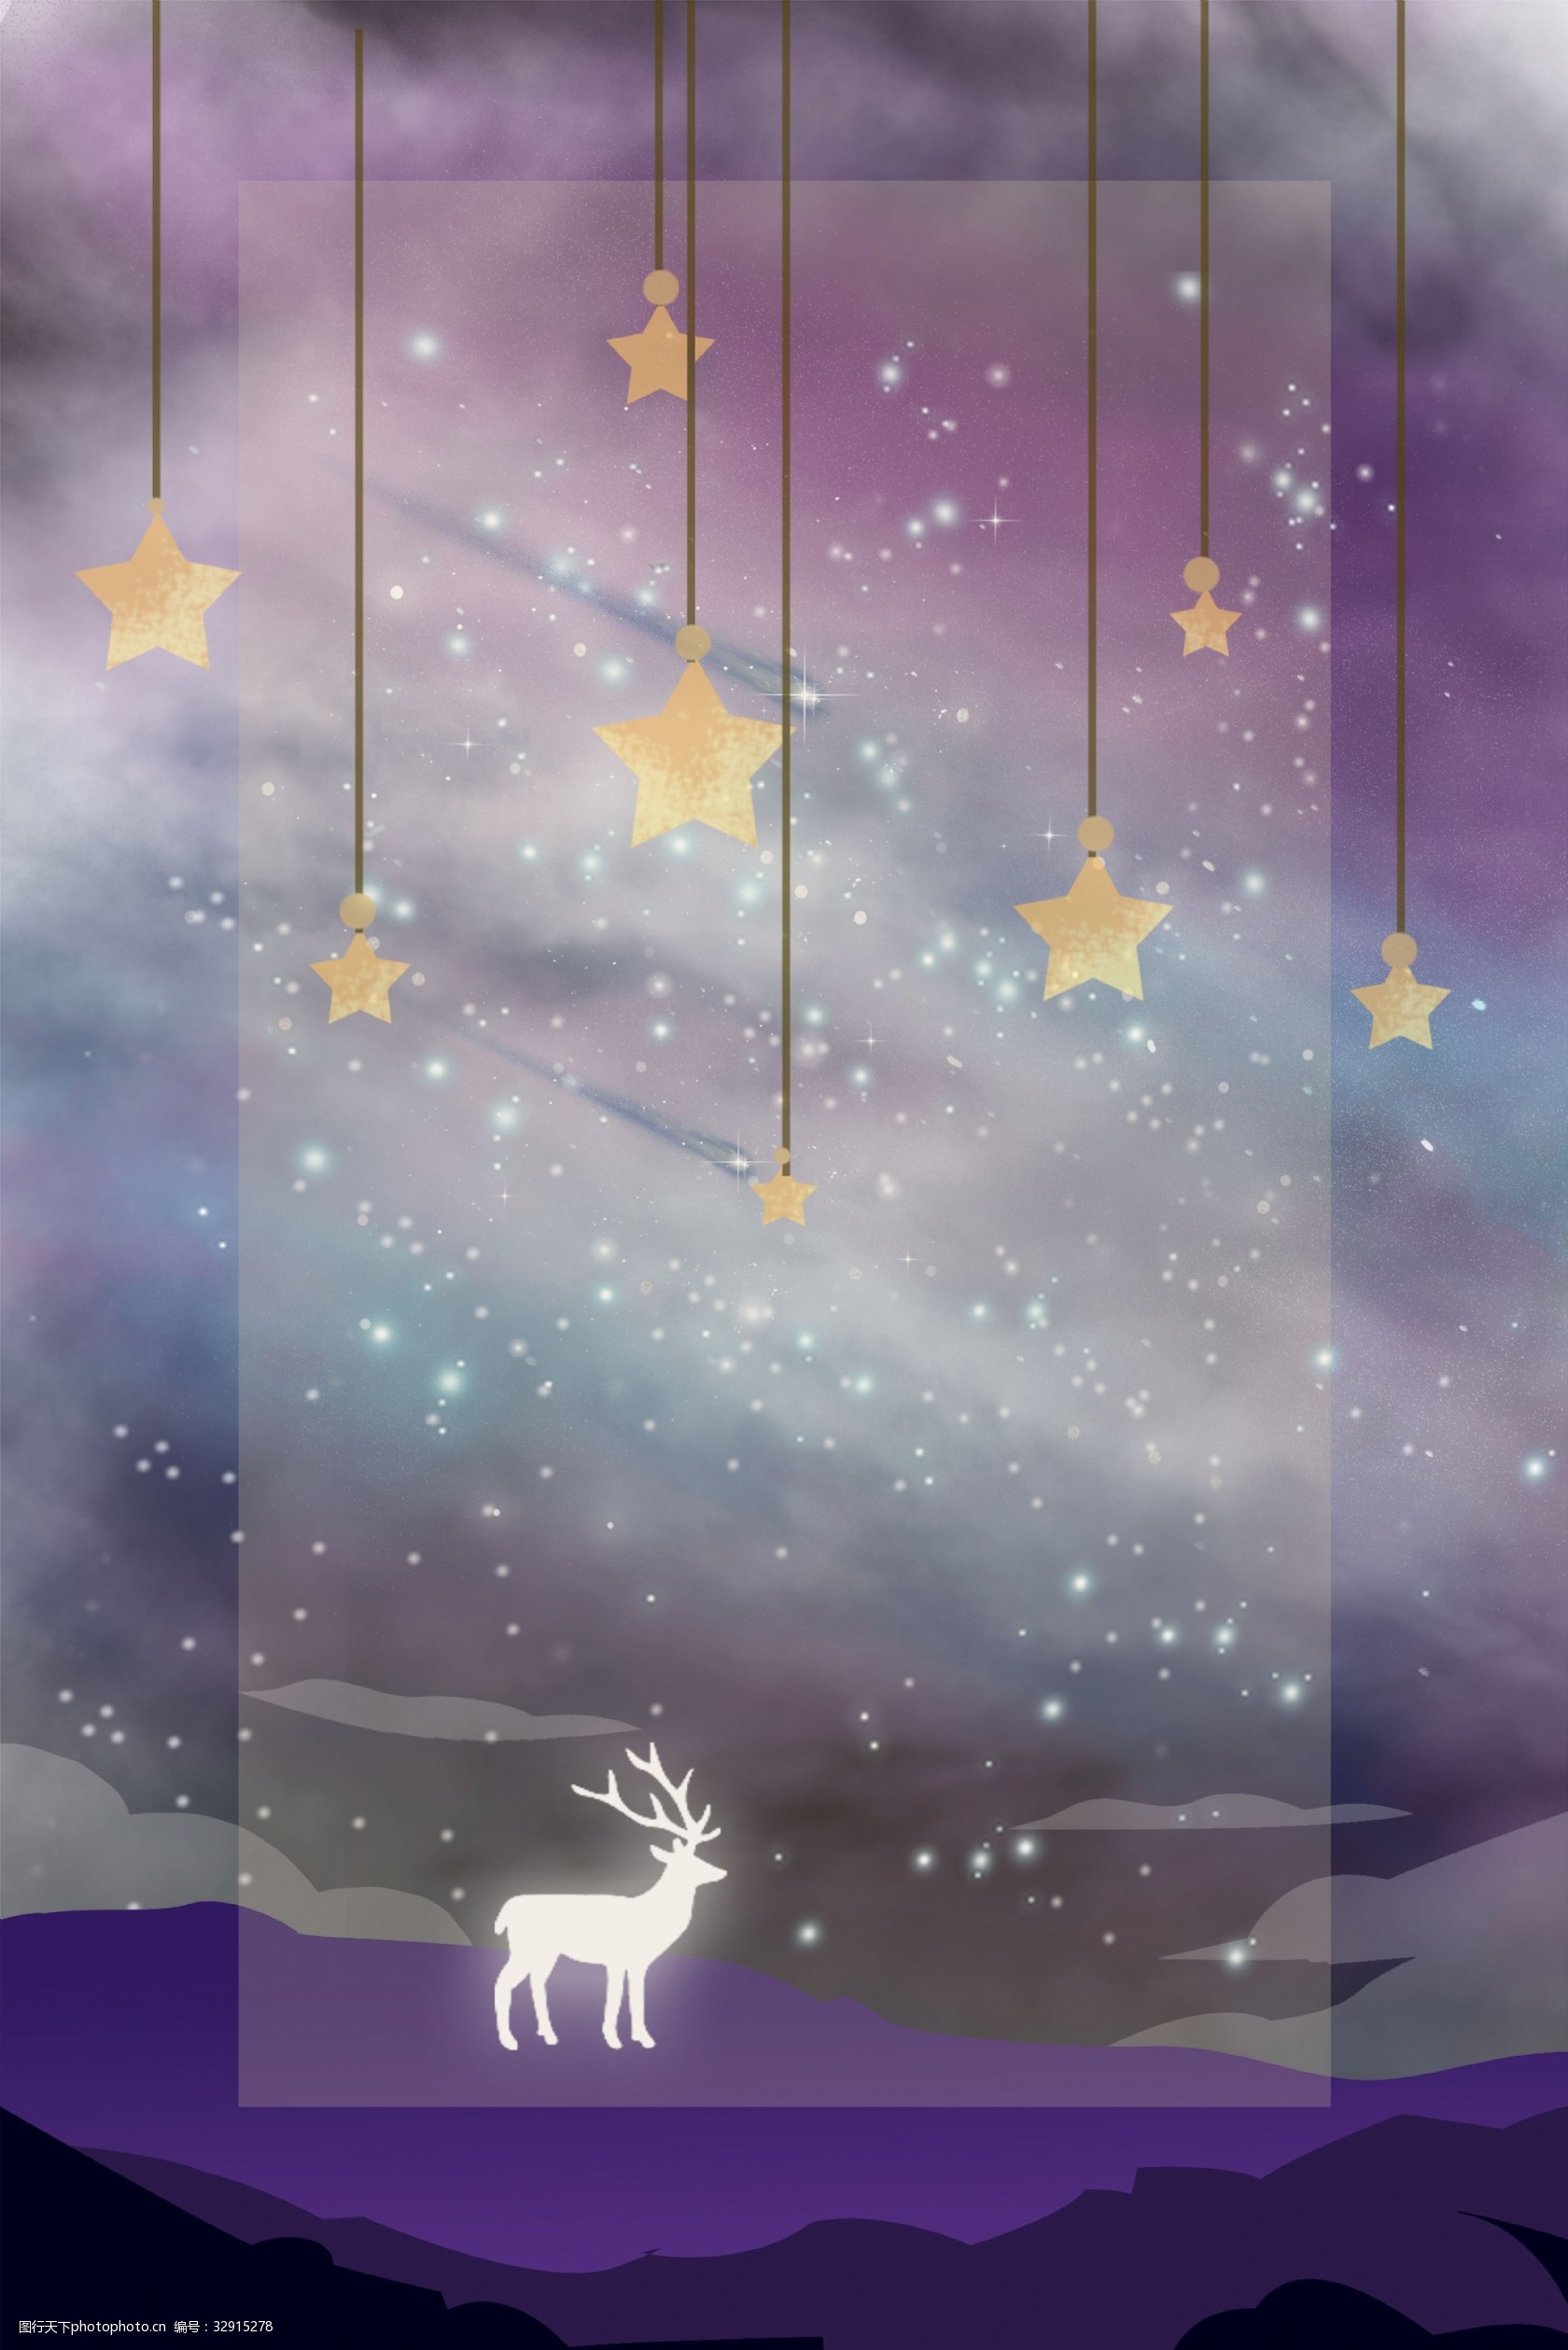 关键词:梦幻的紫色星空麋鹿 紫色 星空 麋鹿 梦幻 夜晚 绚丽 幻想